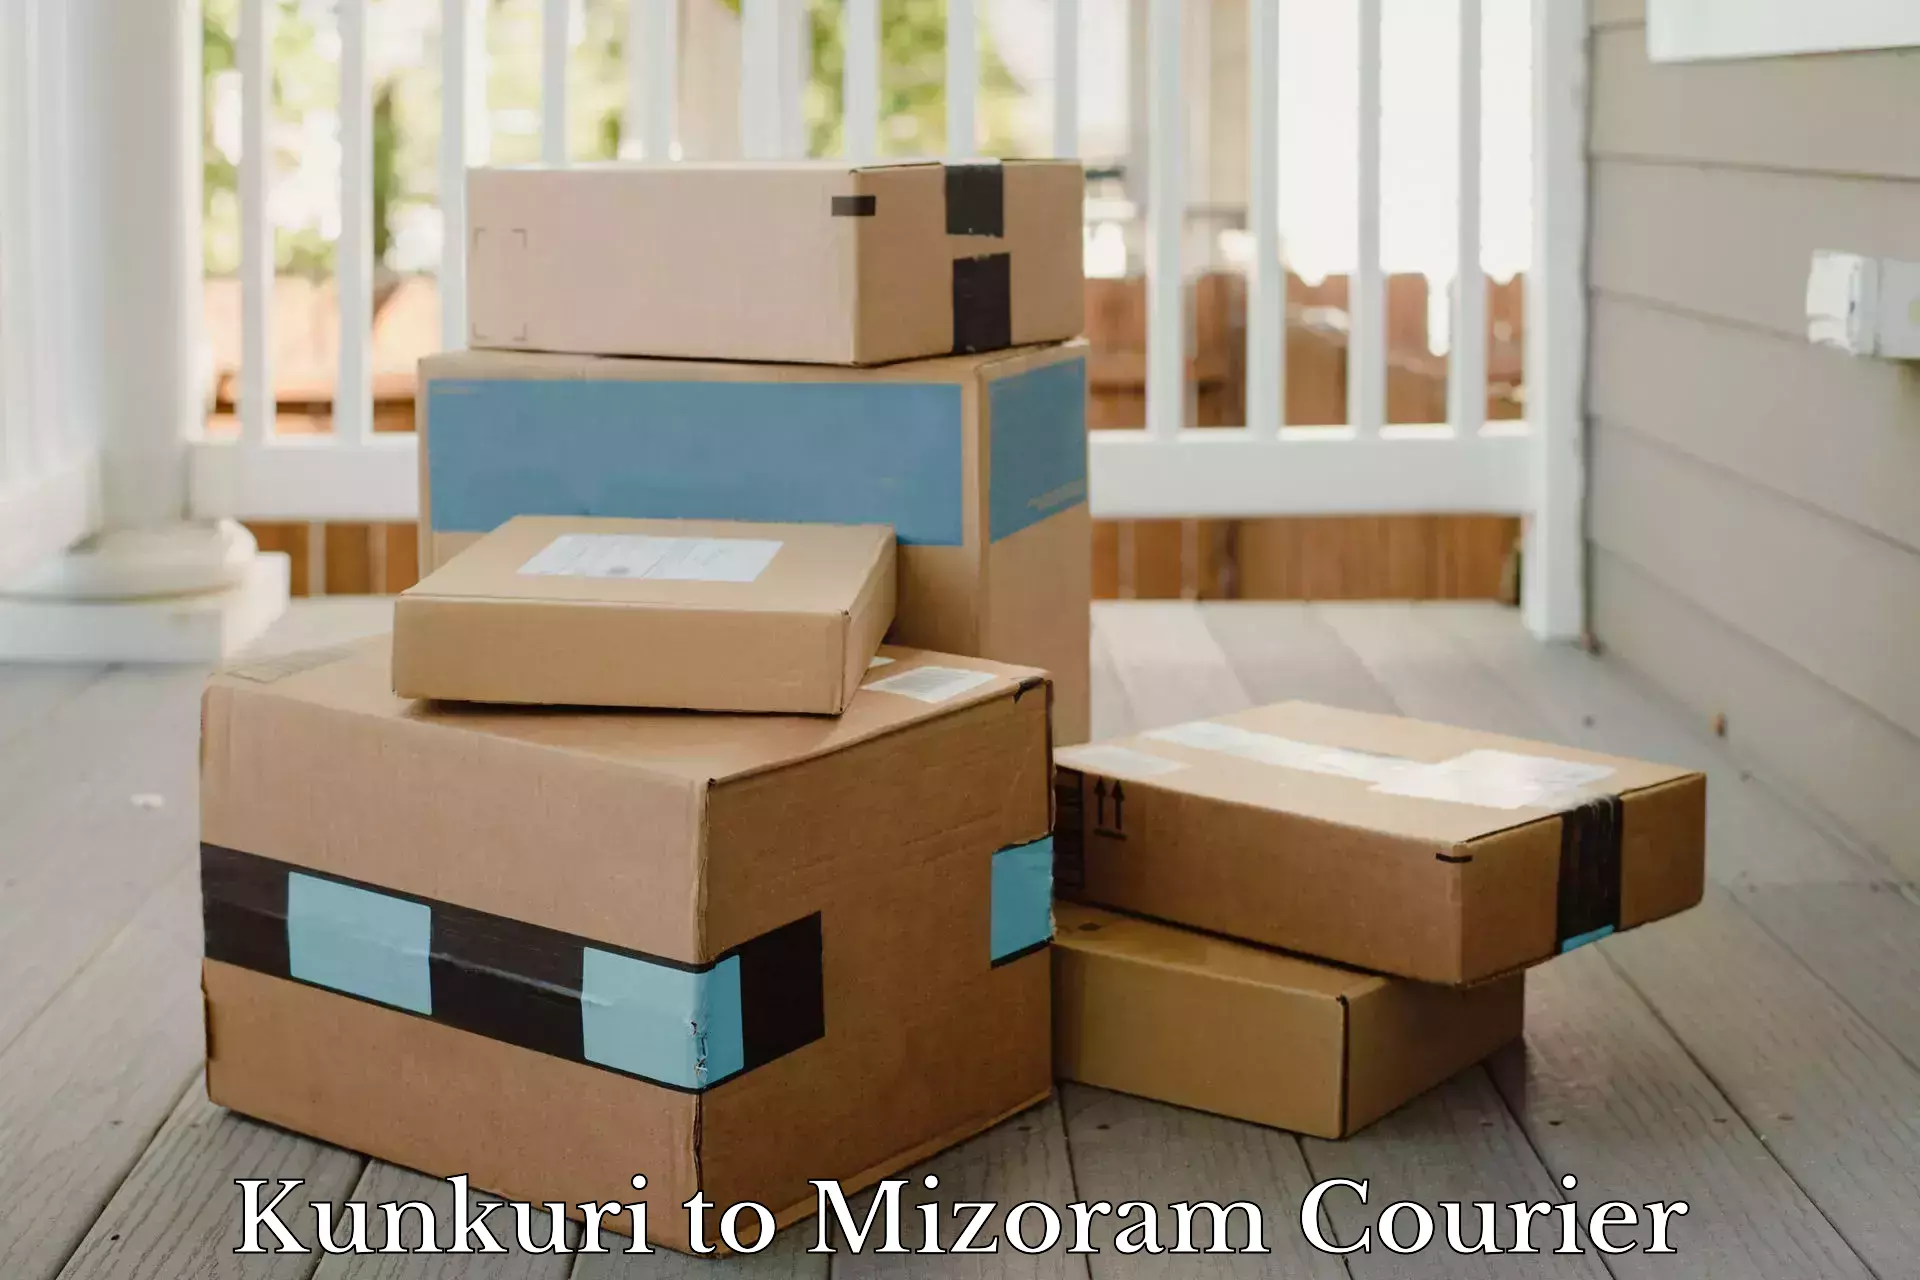 Multi-service courier options Kunkuri to Khawzawl